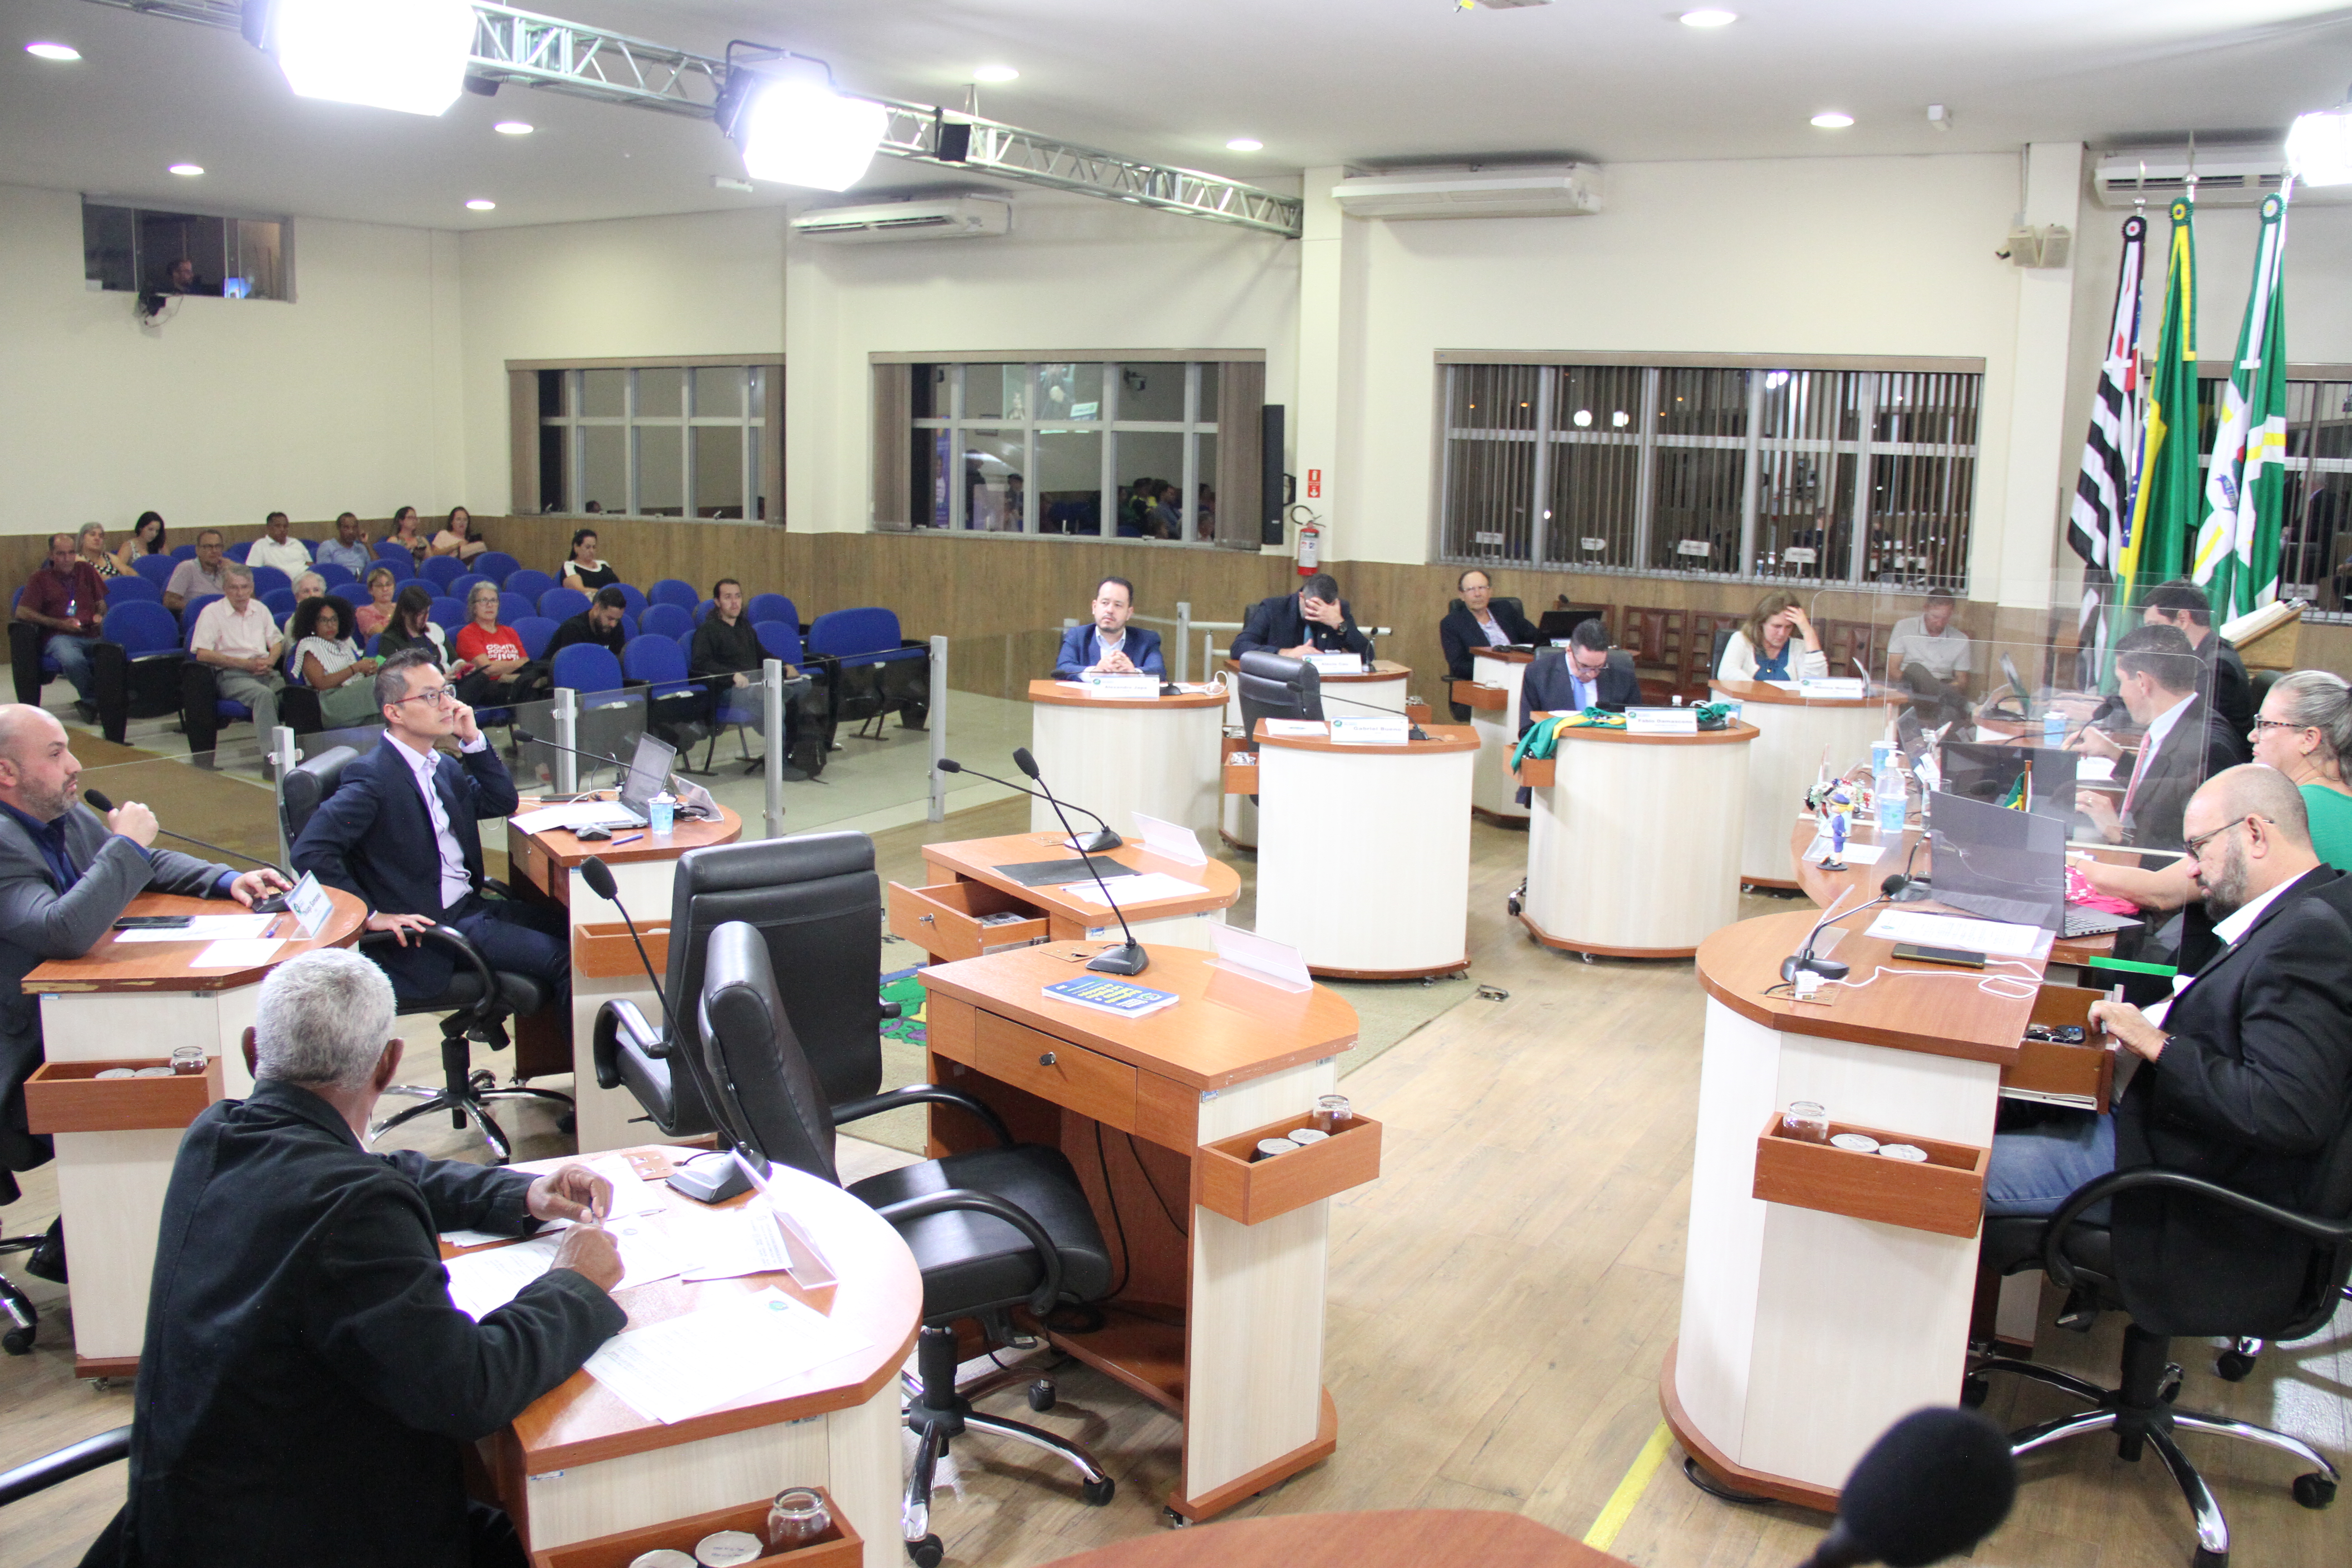 #PraCegoVer: foto mostra o plenário da Câmara com os vereadores sentados em seus lugares e o público que acompanha a sessão.